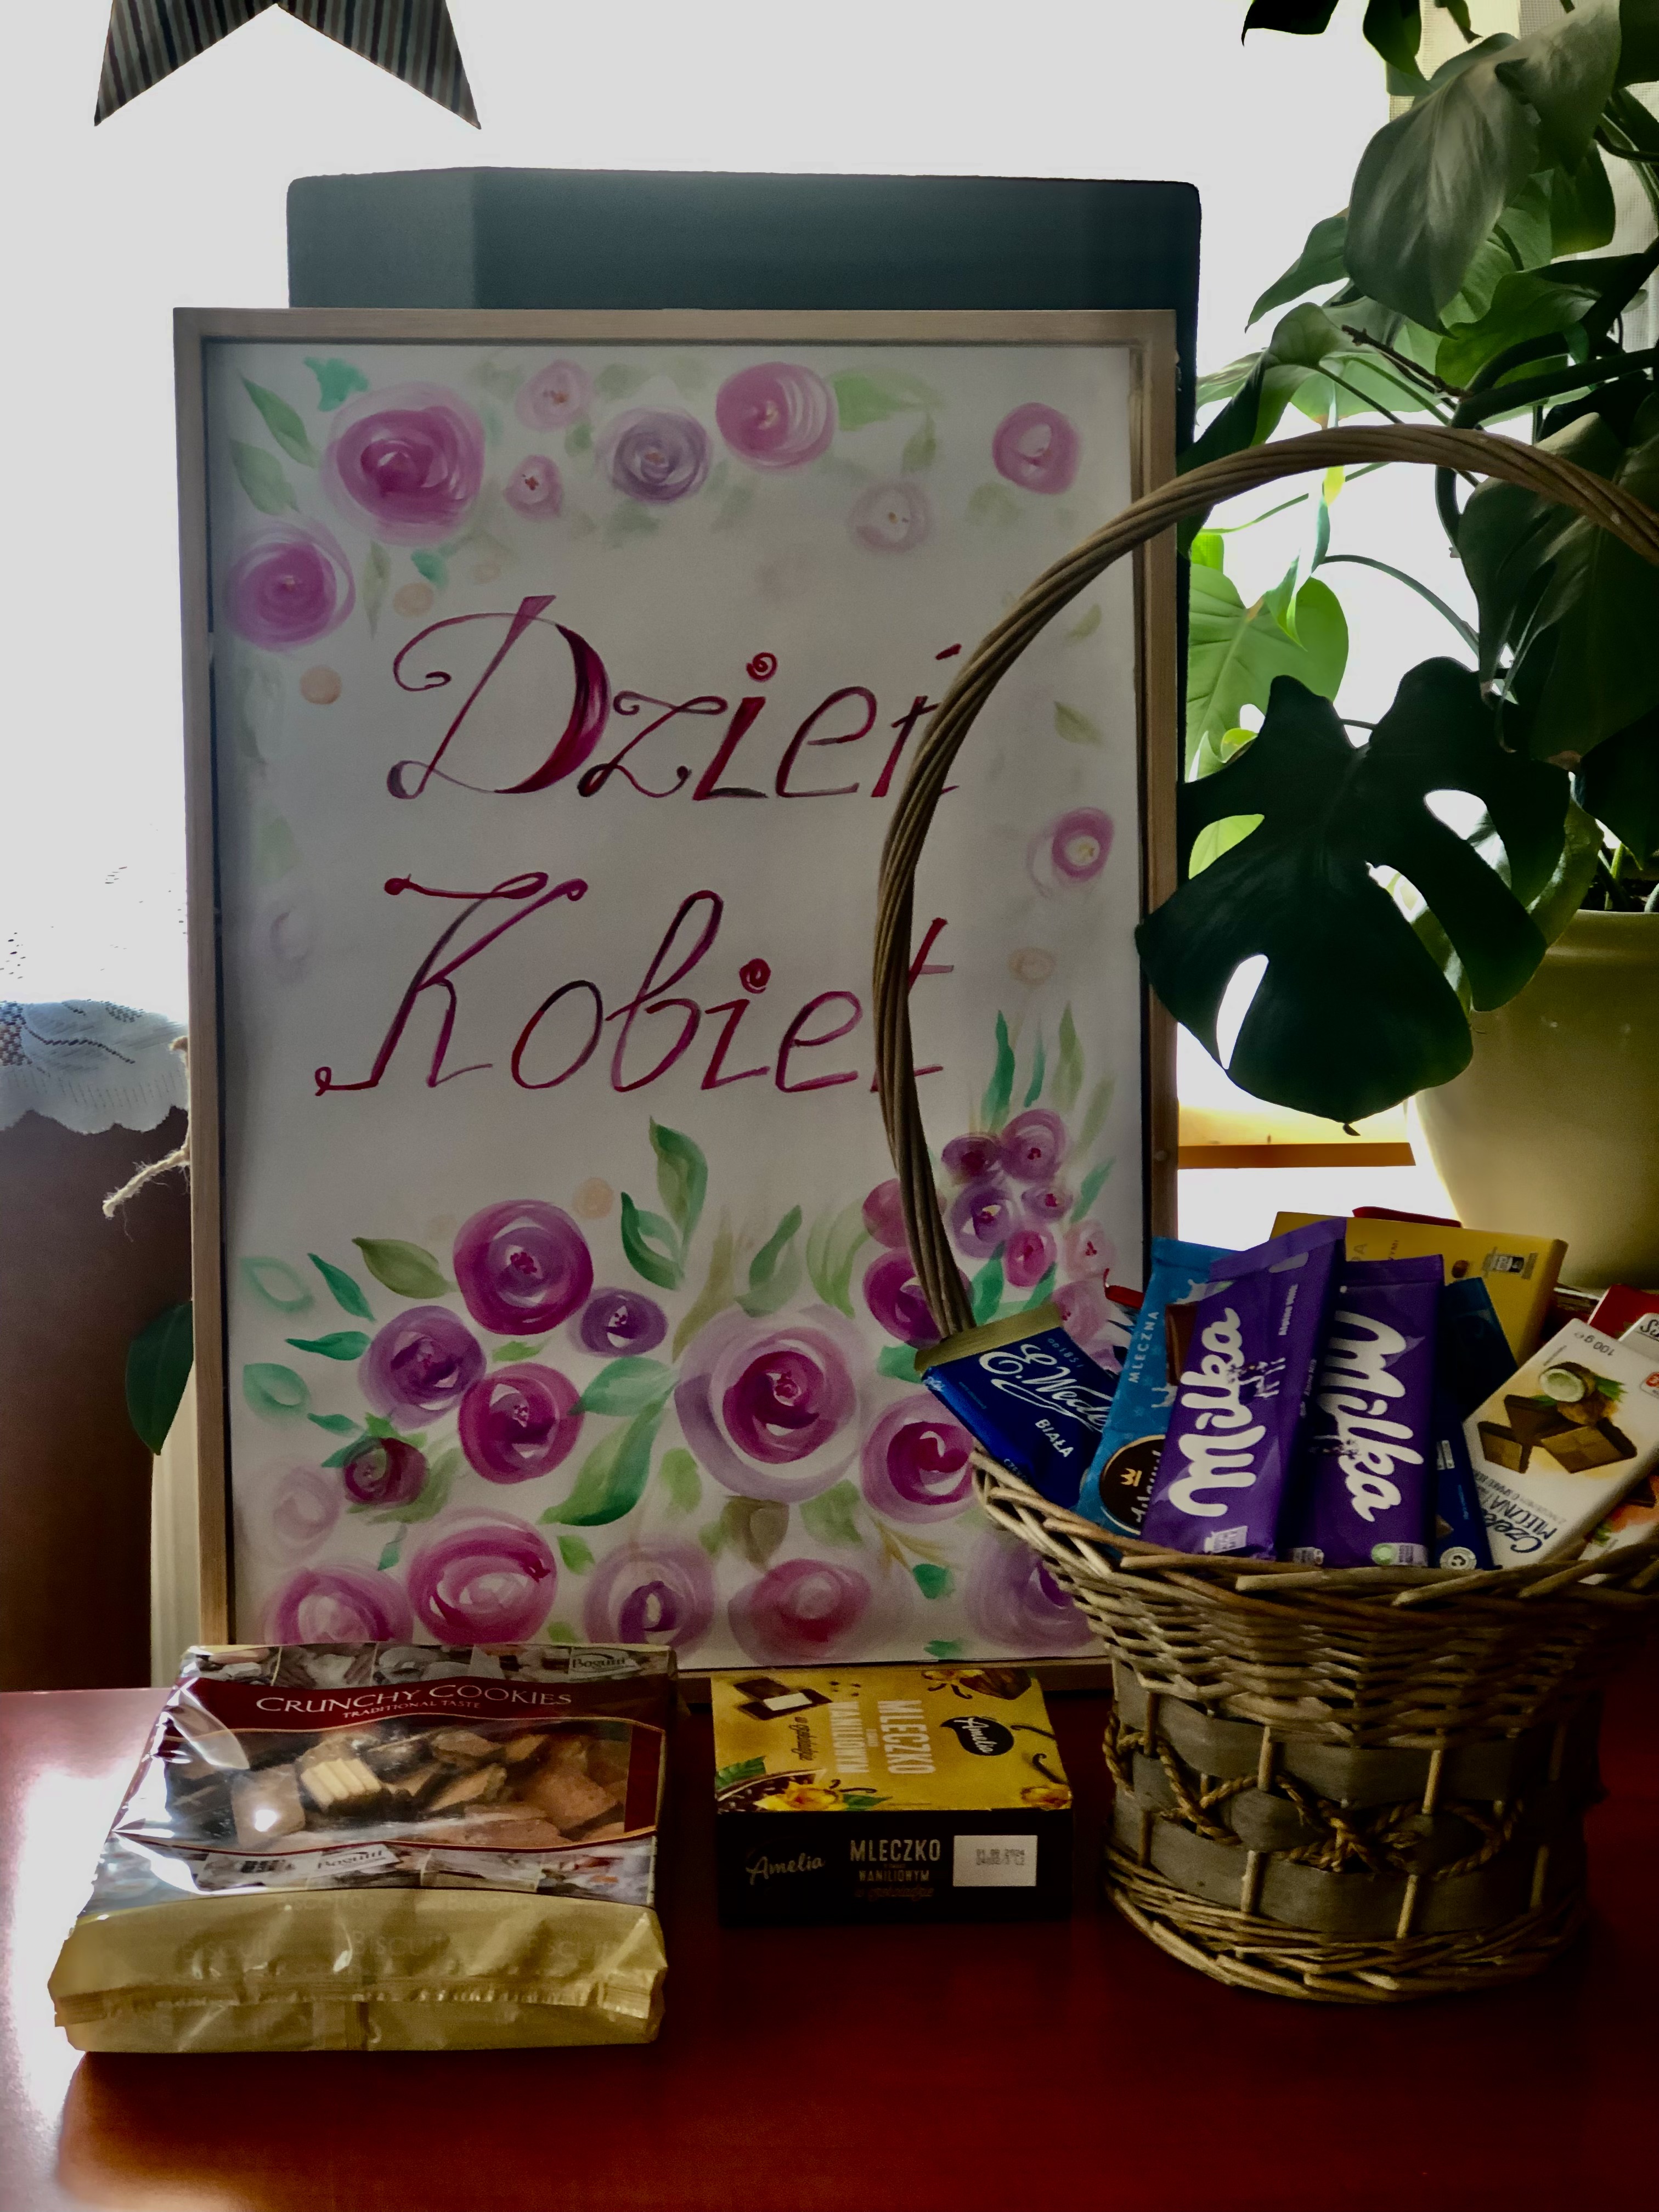 Plakat z napisem Dzień kobiet, obok stoi koszyk z czekoladami